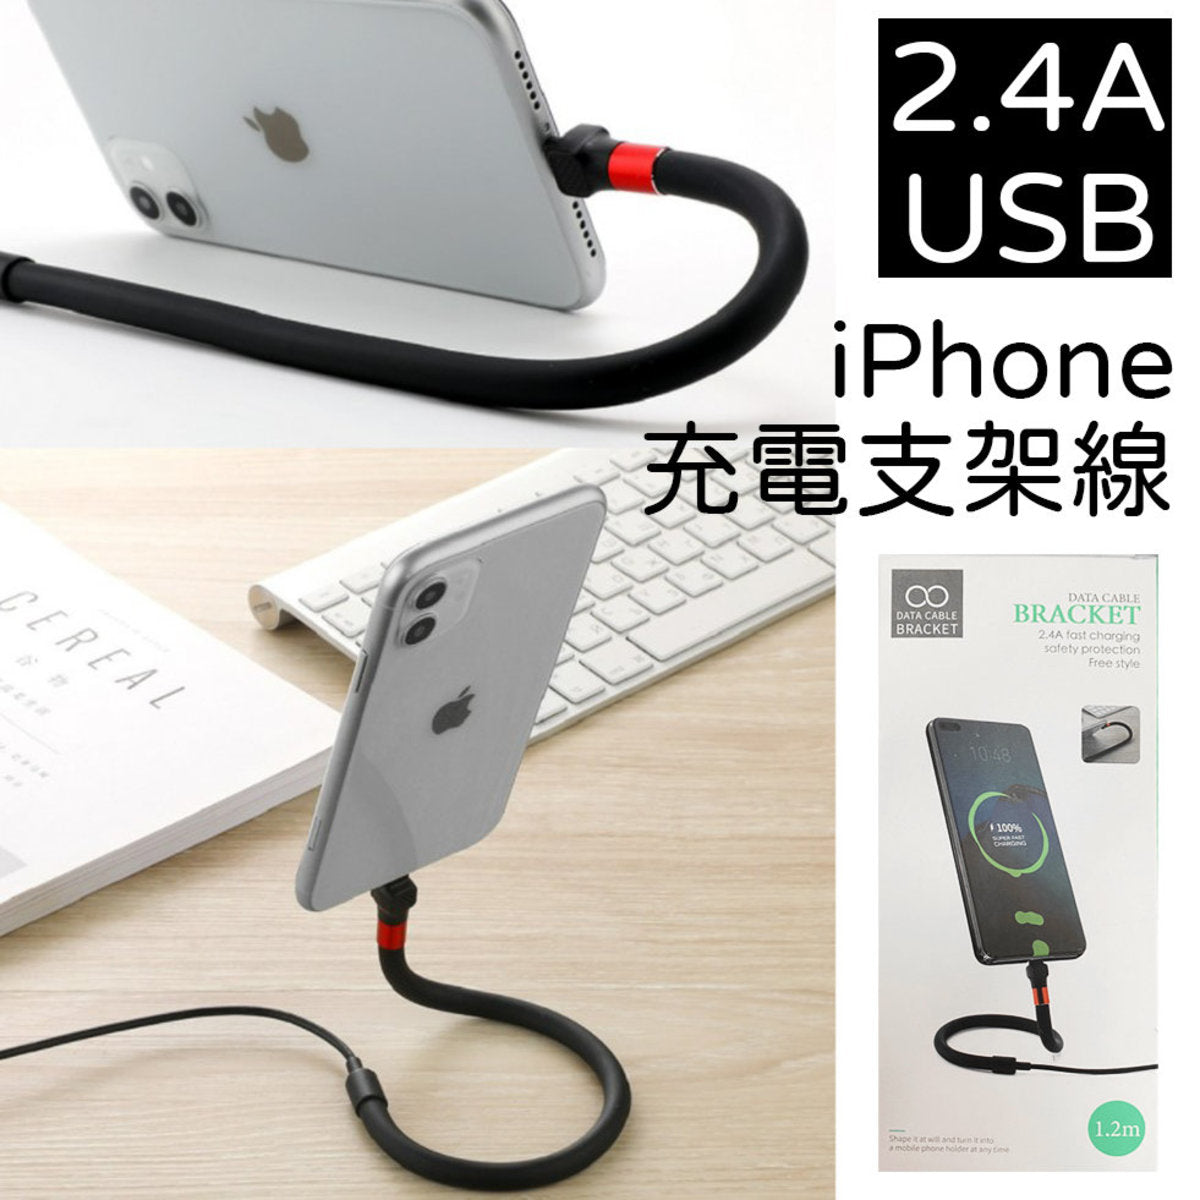 iPhone 支架充電線 lightning USB 1.2M 手機支架創新設計 數據線快充數據線